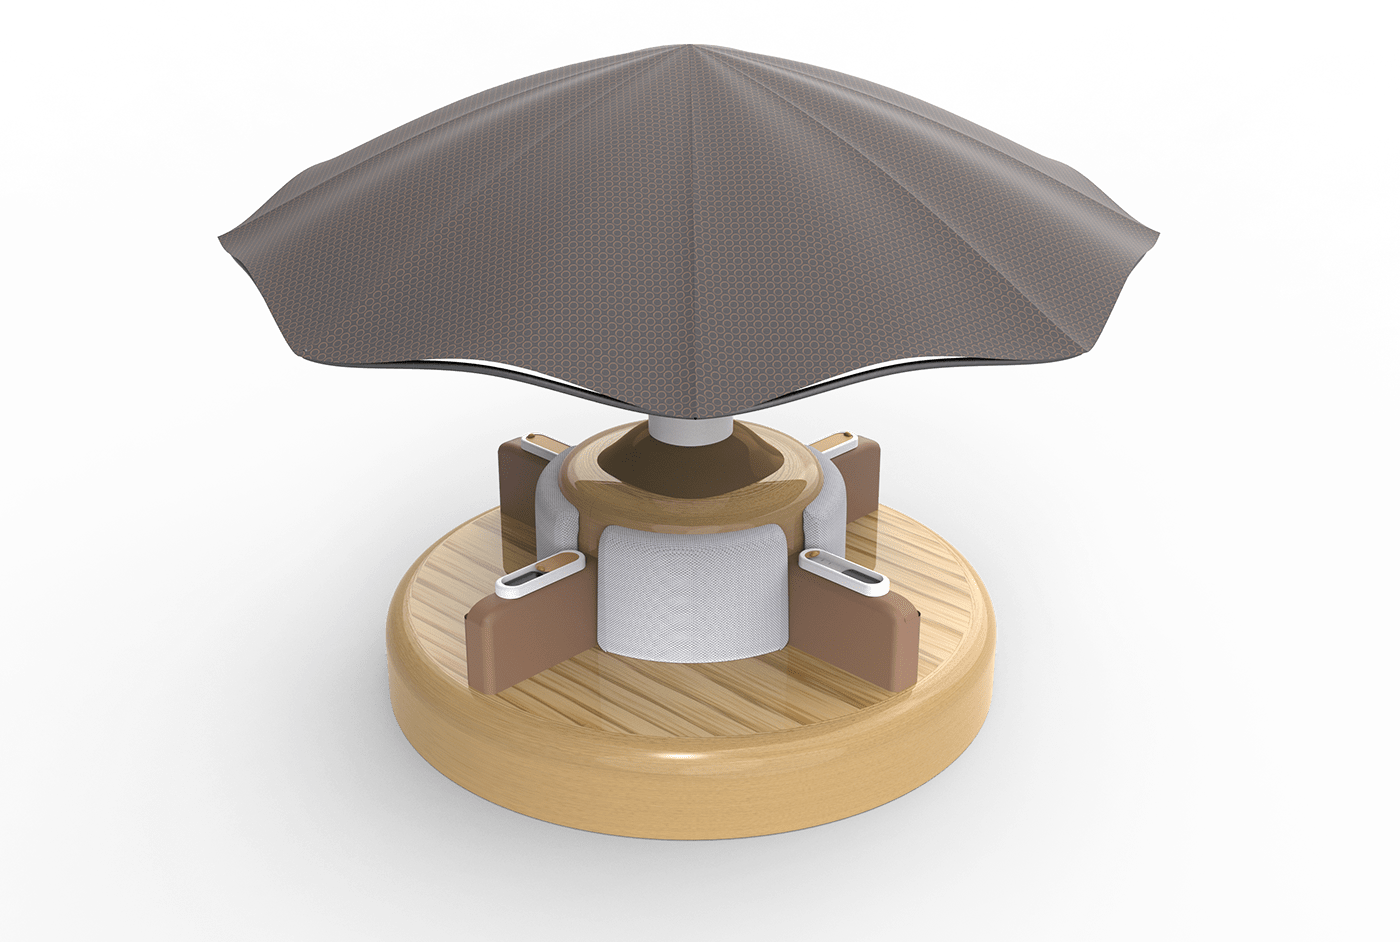 furniture design 3D 3d modeling visualization Social media post designer